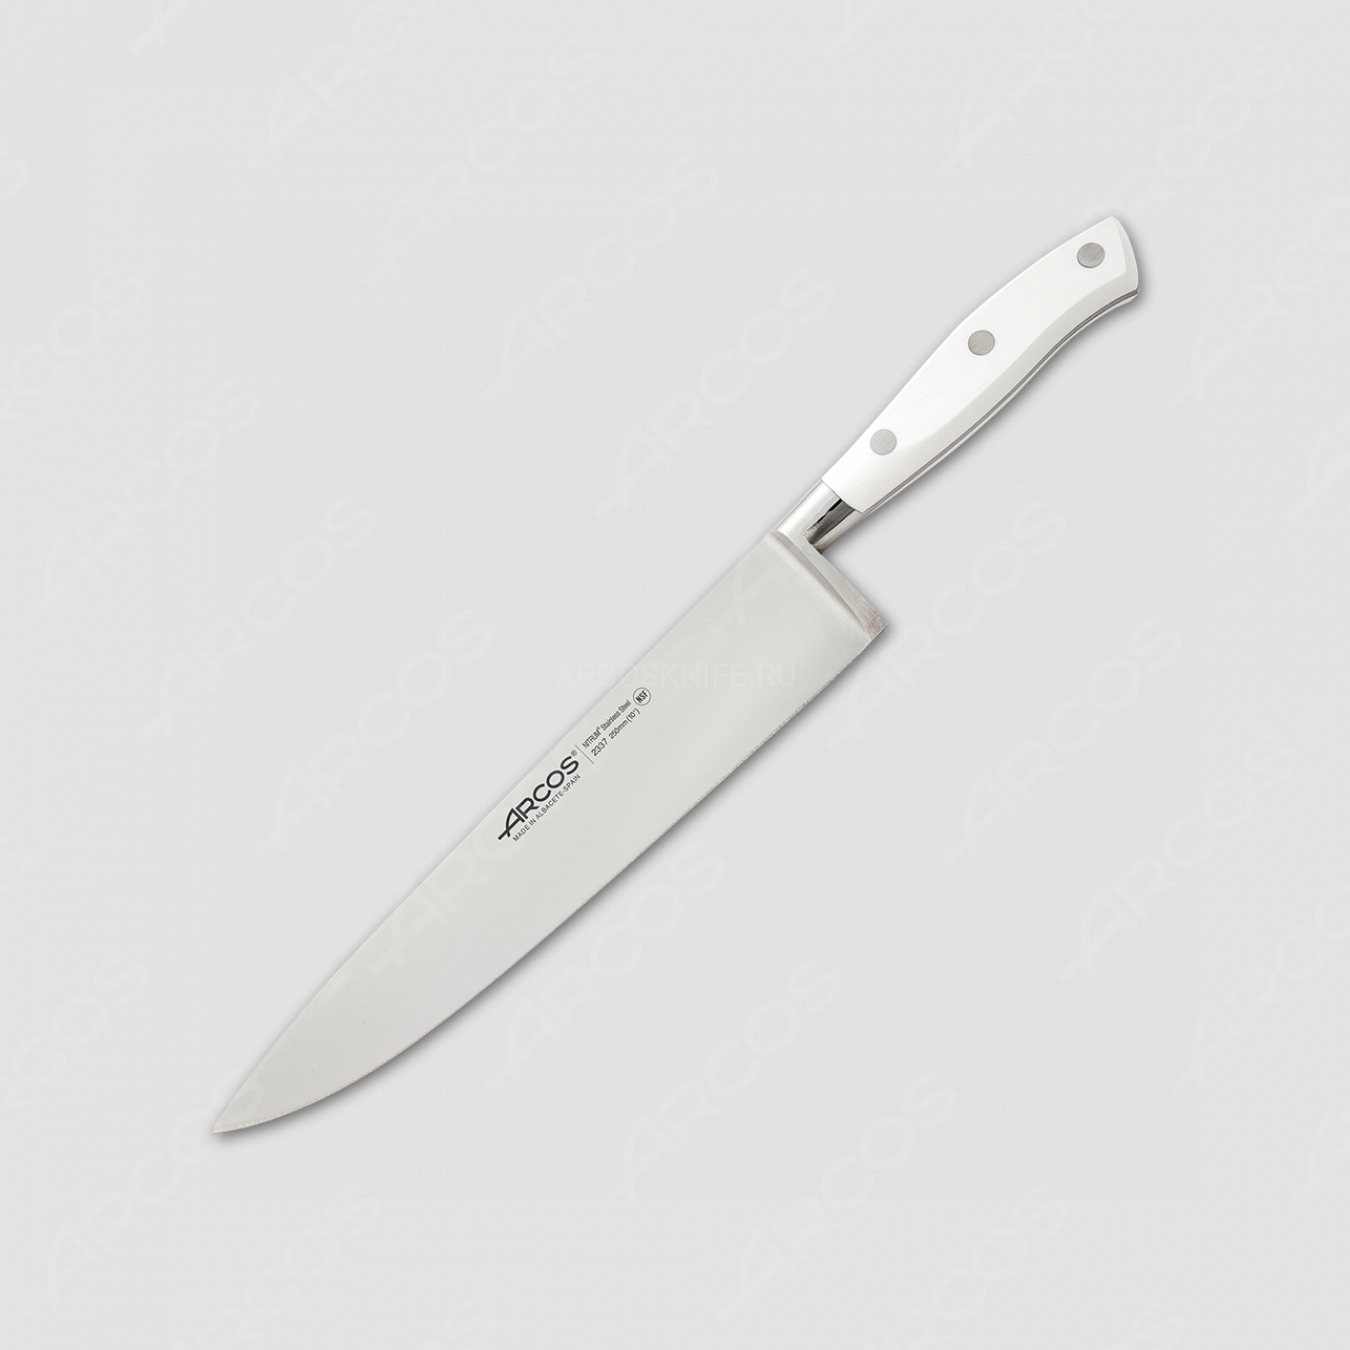 Профессиональный поварской кухонный нож 25 см, серия Riviera Blanca, ARCOS, Испания